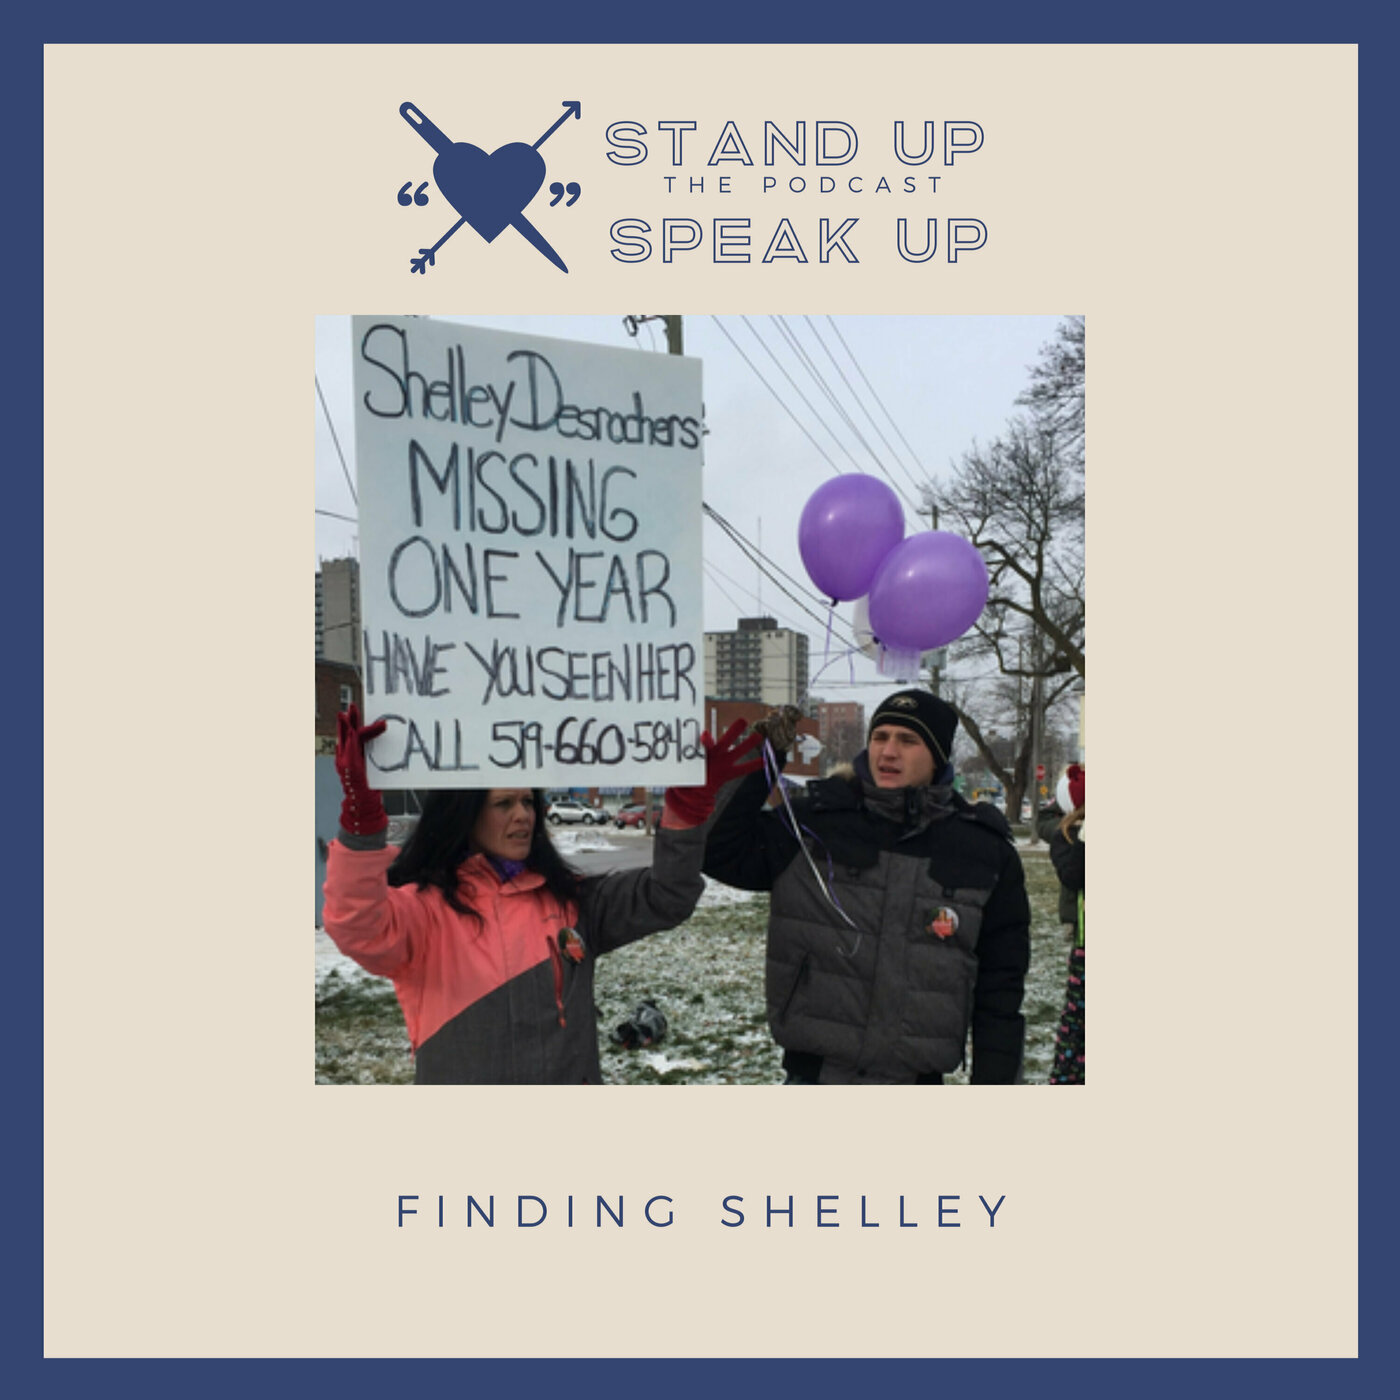 Finding Shelley Desrochers: Part 4 - Series Update